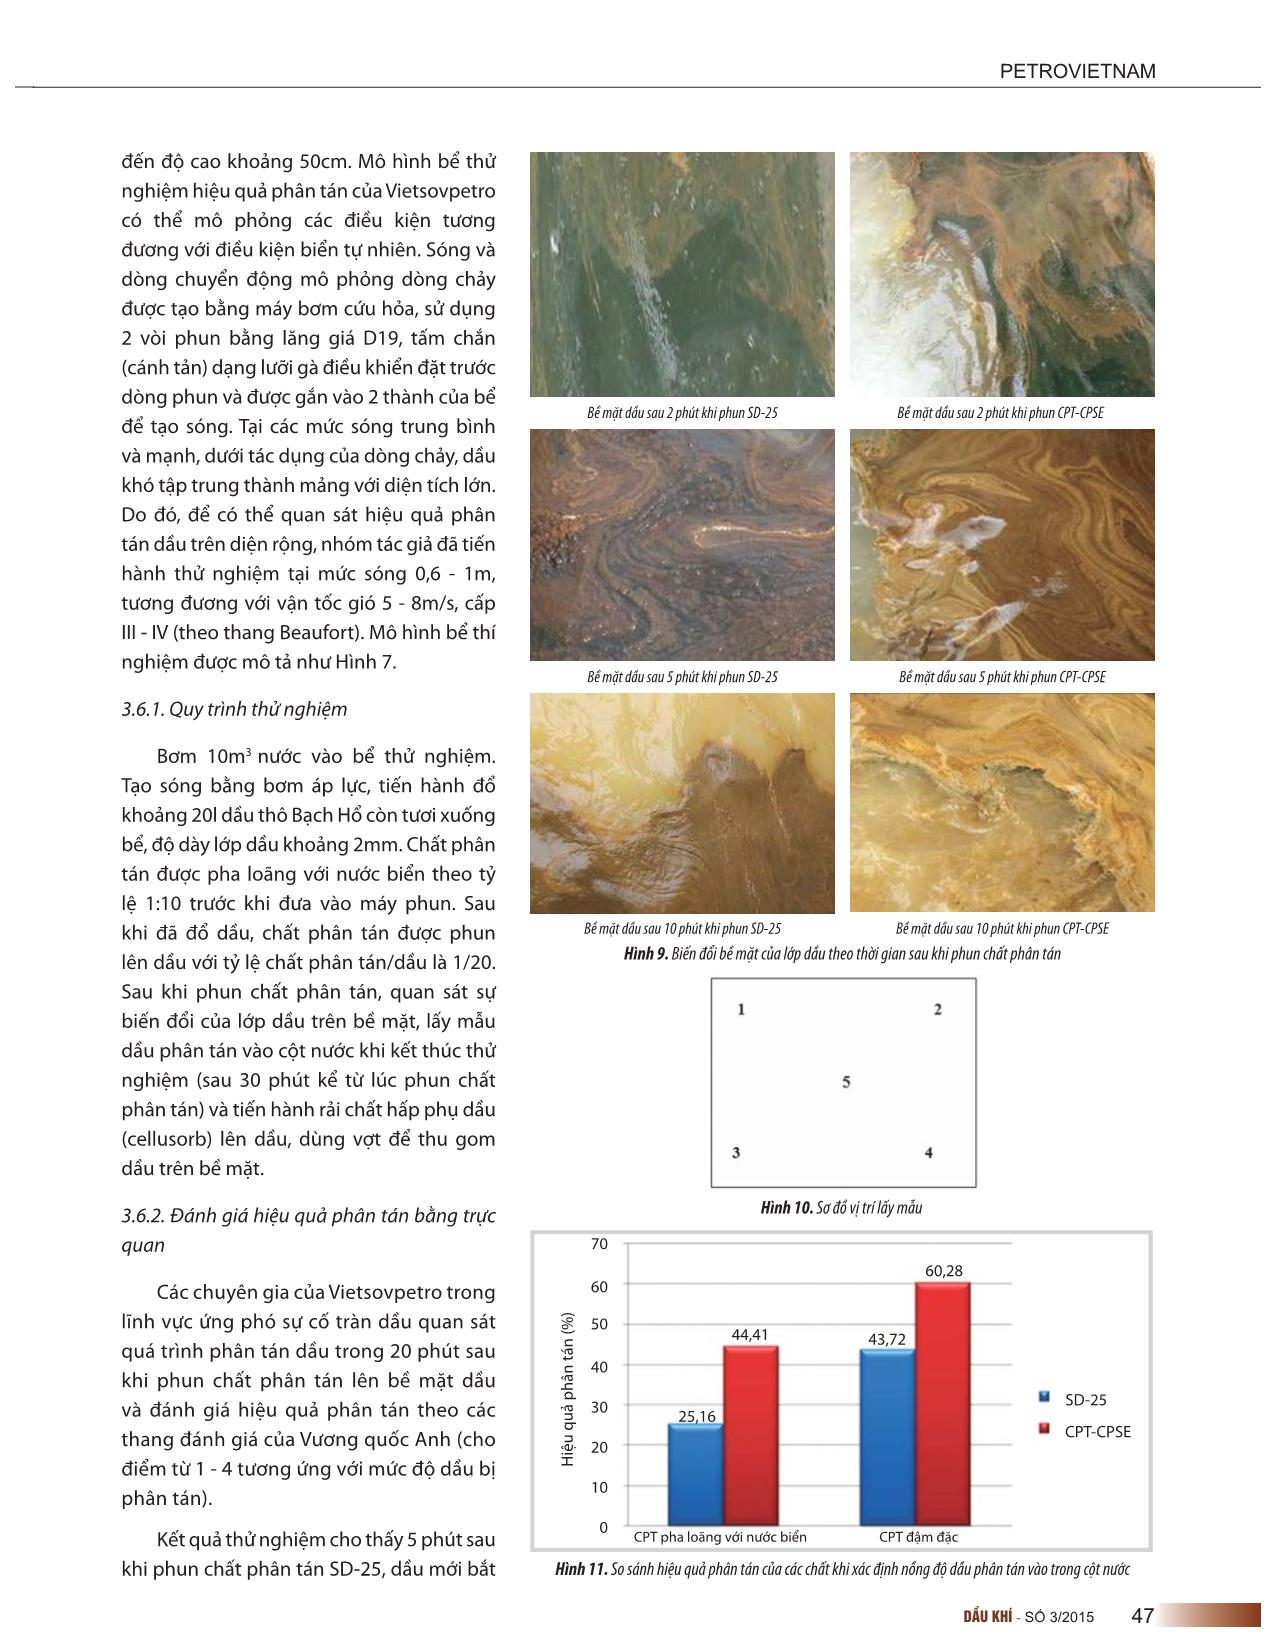 Nghiên cứu pha chế chất phân tán dầu từ các hóa chất hoạt động bề mặt tổng hợp phù hợp với đặc trưng của dầu thô Việt Nam trang 8